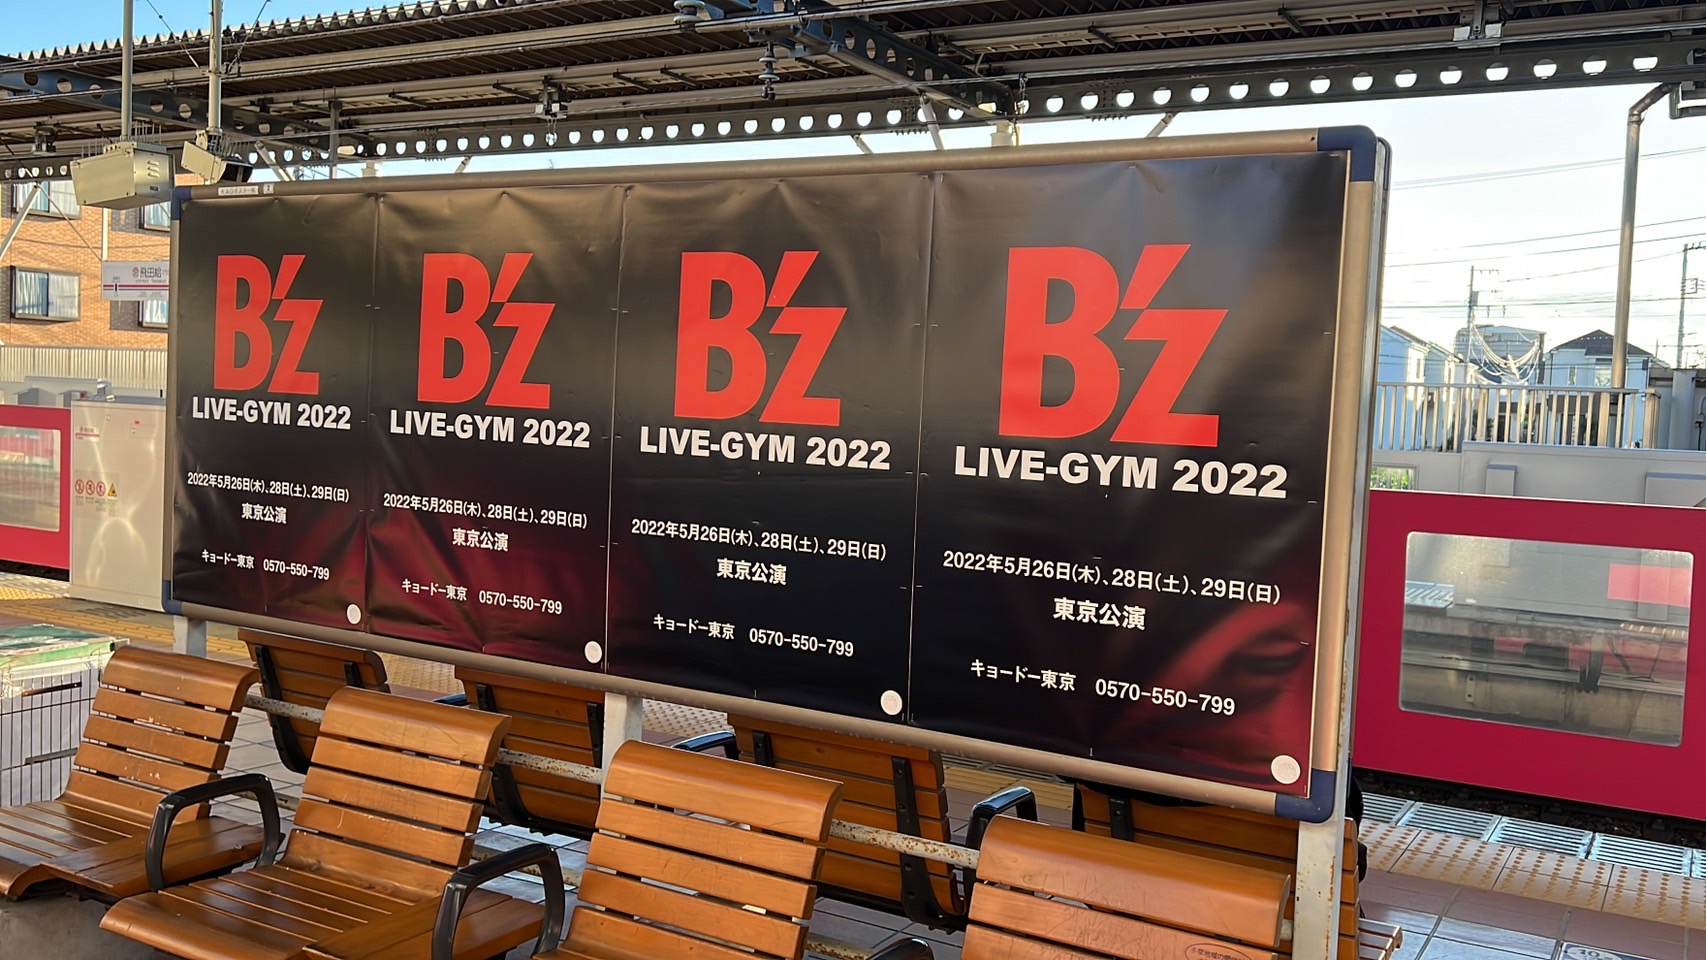 京王線2番・3番線ホームに掲出された「B'z LIVE-GYM 2022」の告知ポスターの写真